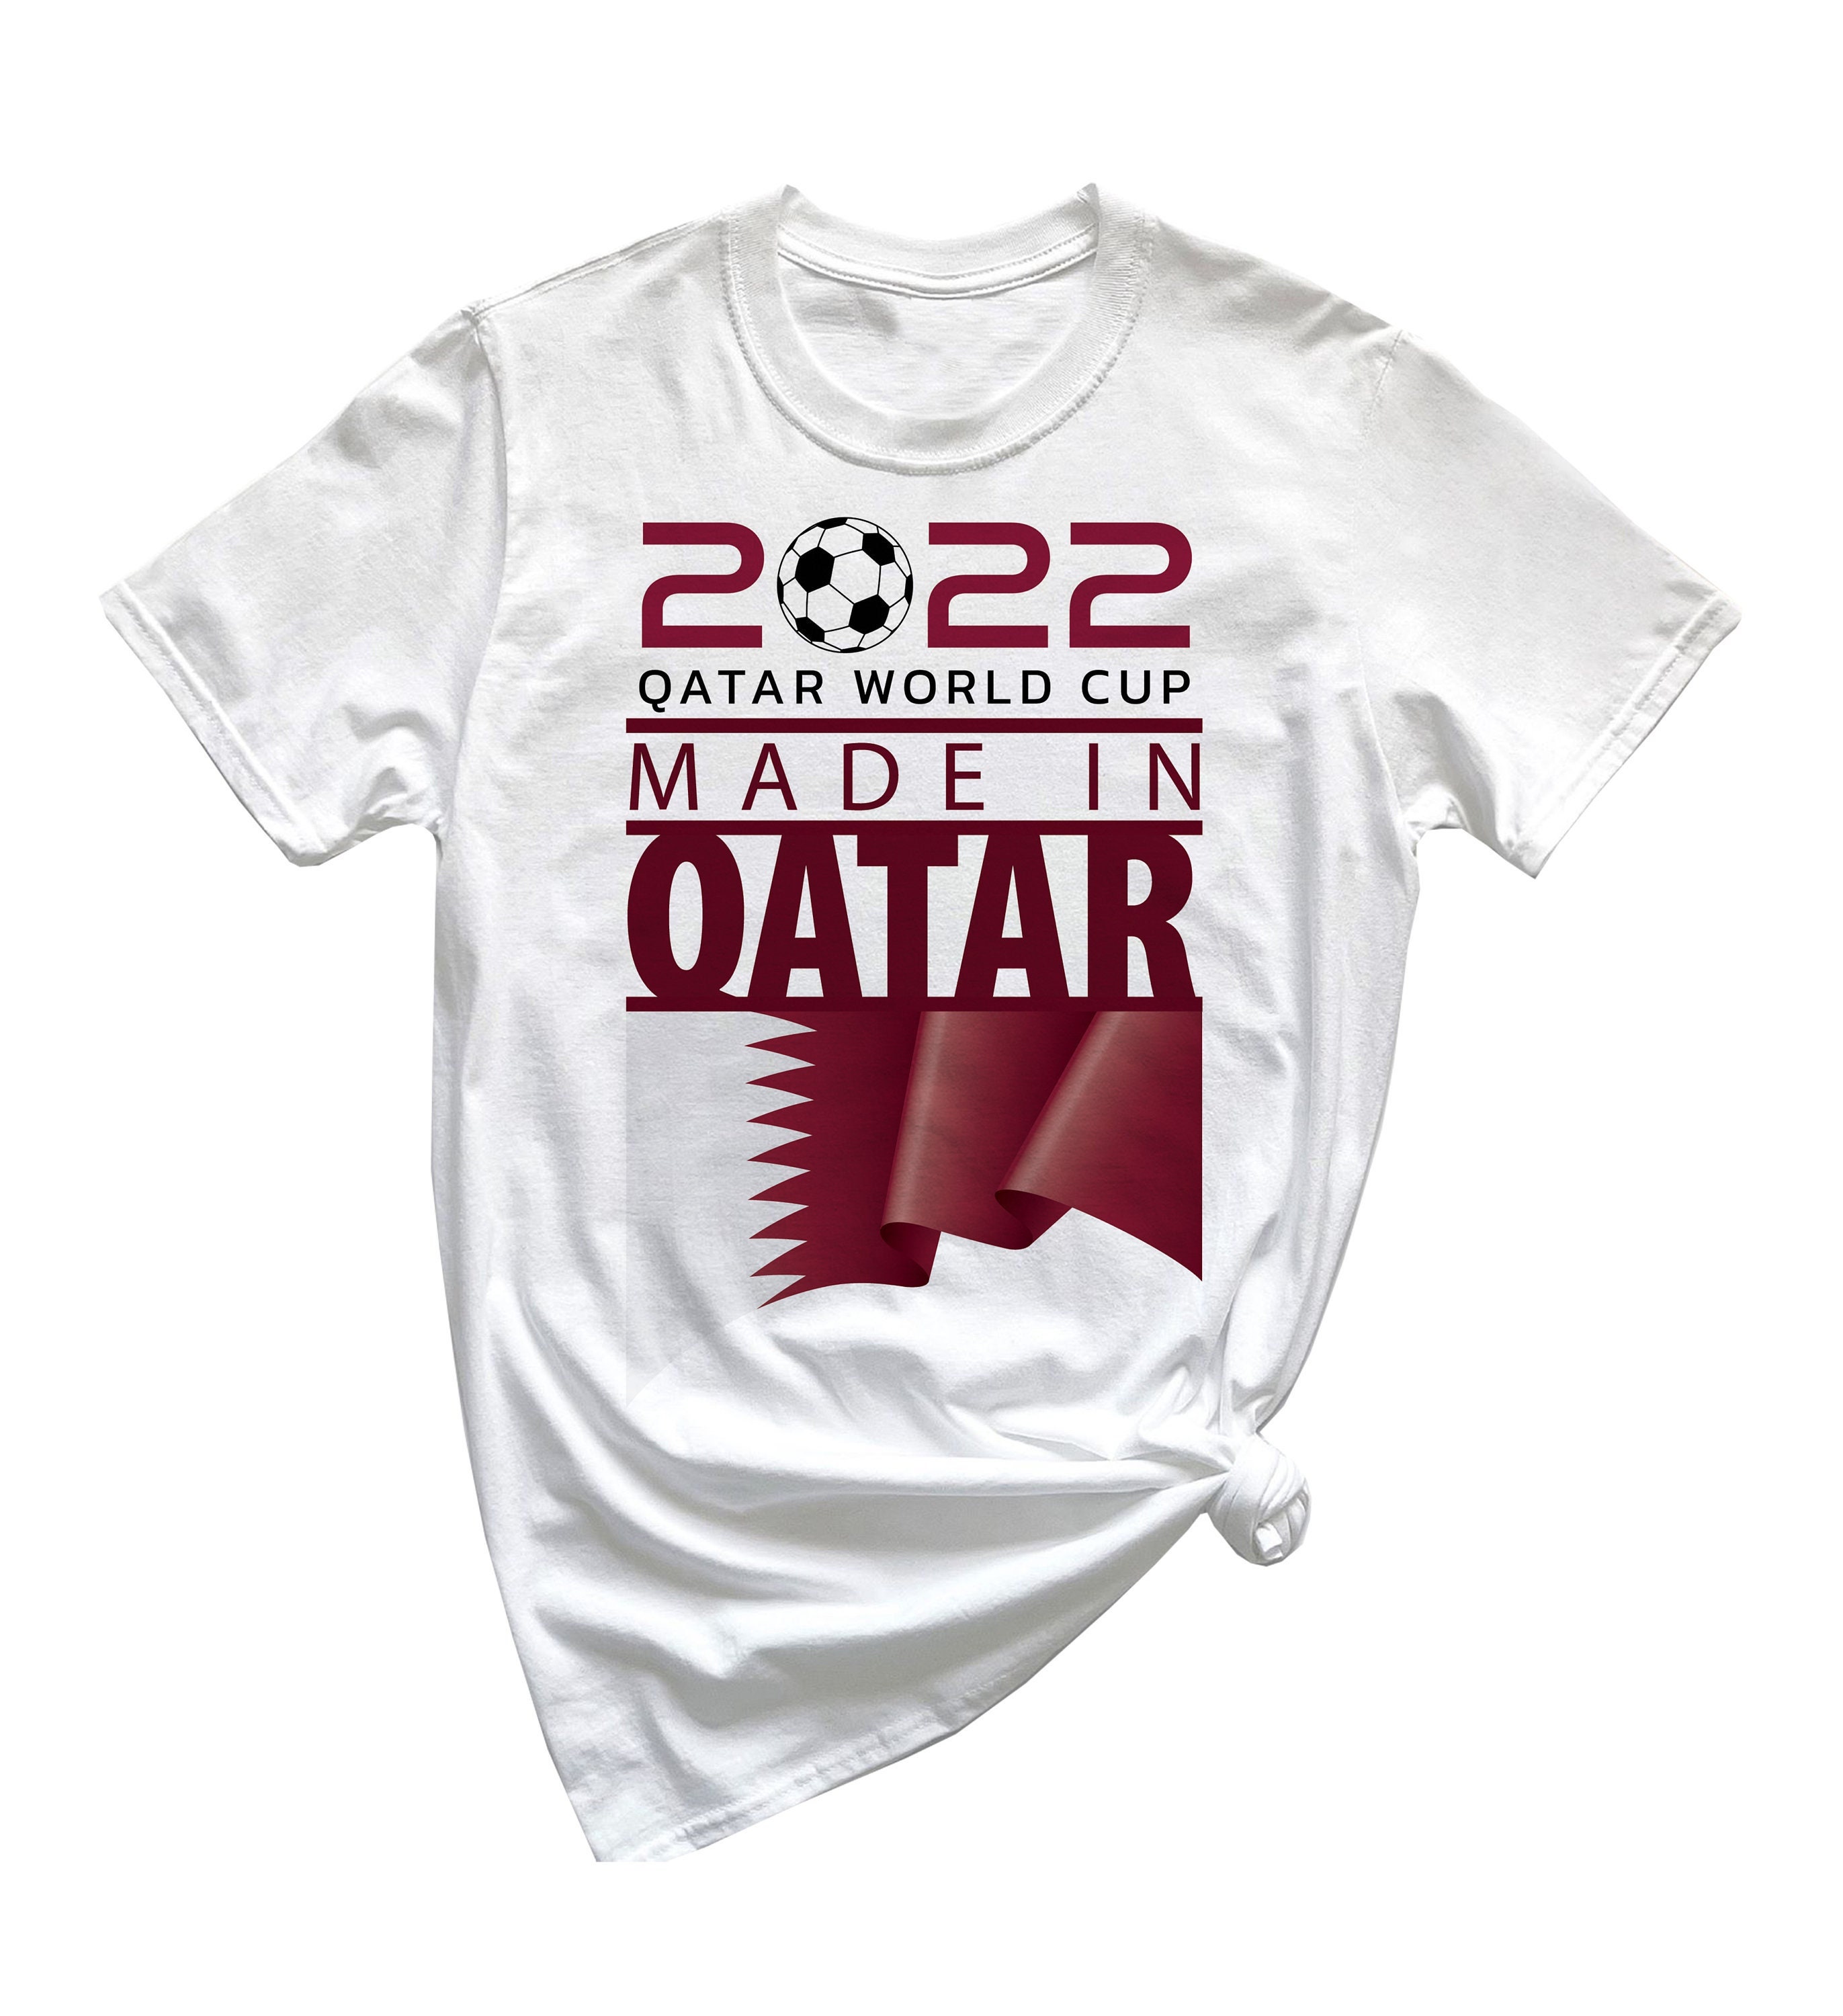 Discover Made in Qatar WM - Qatar World Cup 2022 T-Shirt